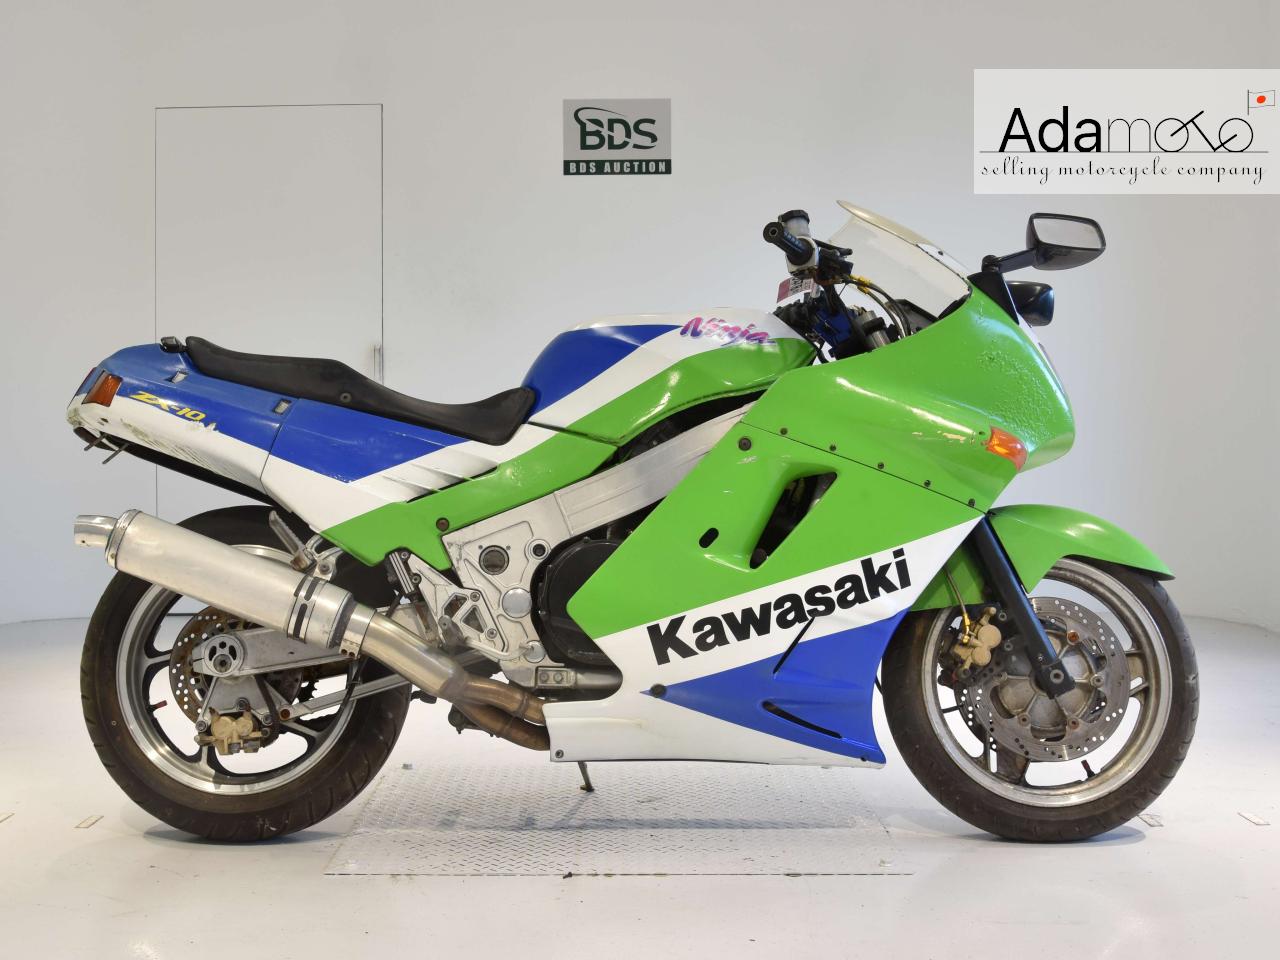 Kawasaki ZX 10 - Adamoto - Motorcycles from Japan